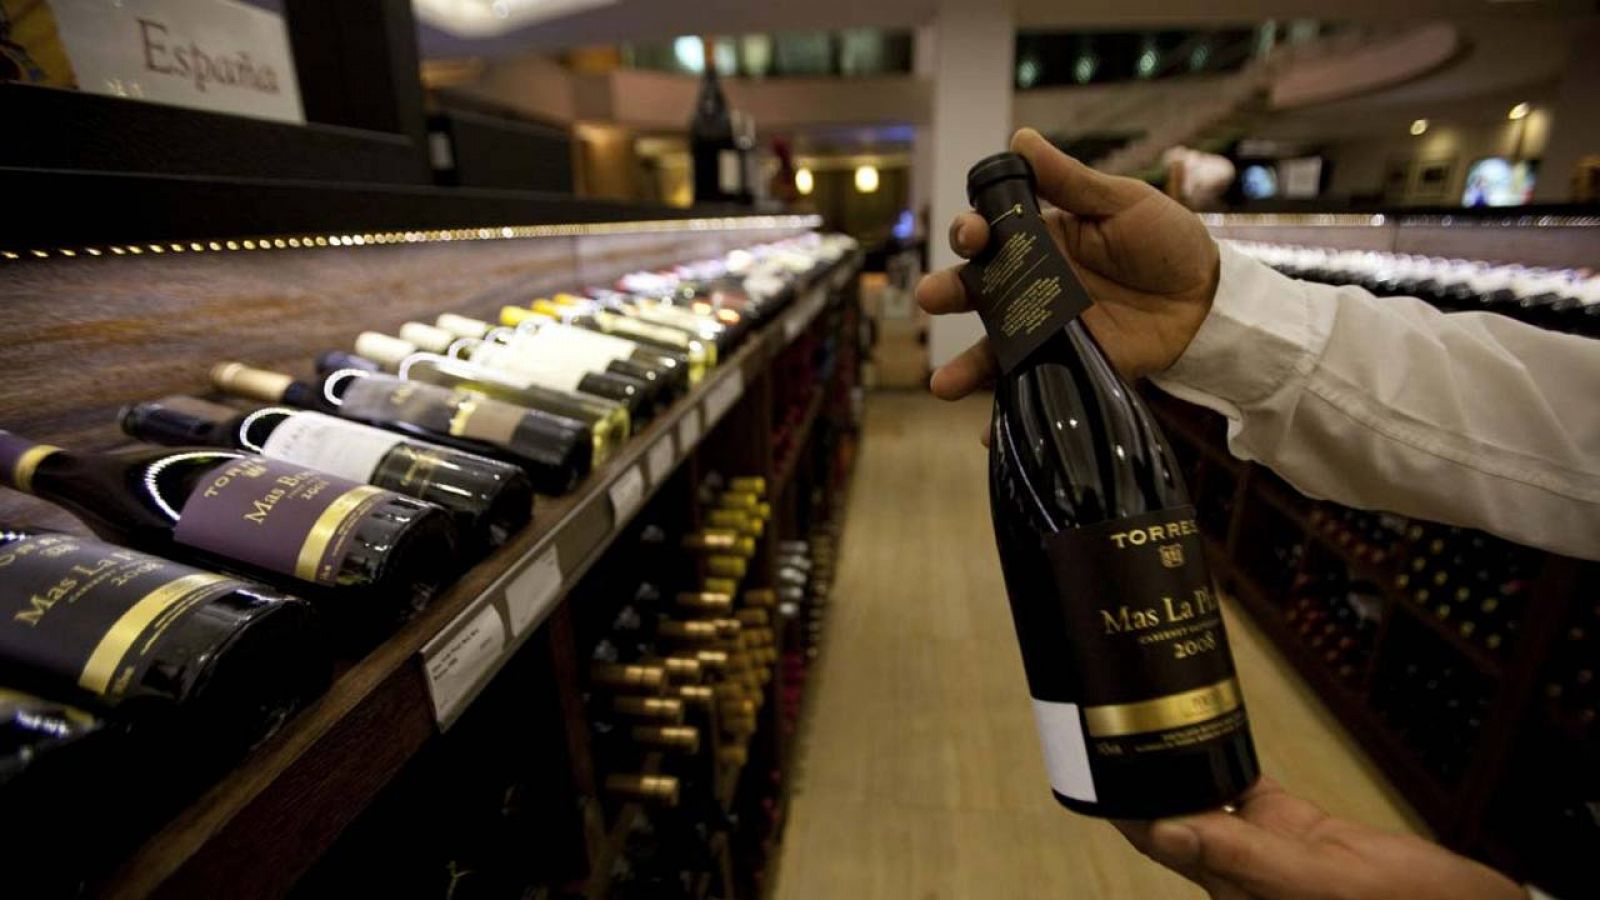 Un empleado de una tienda de vinos sostiene una botella de vino español